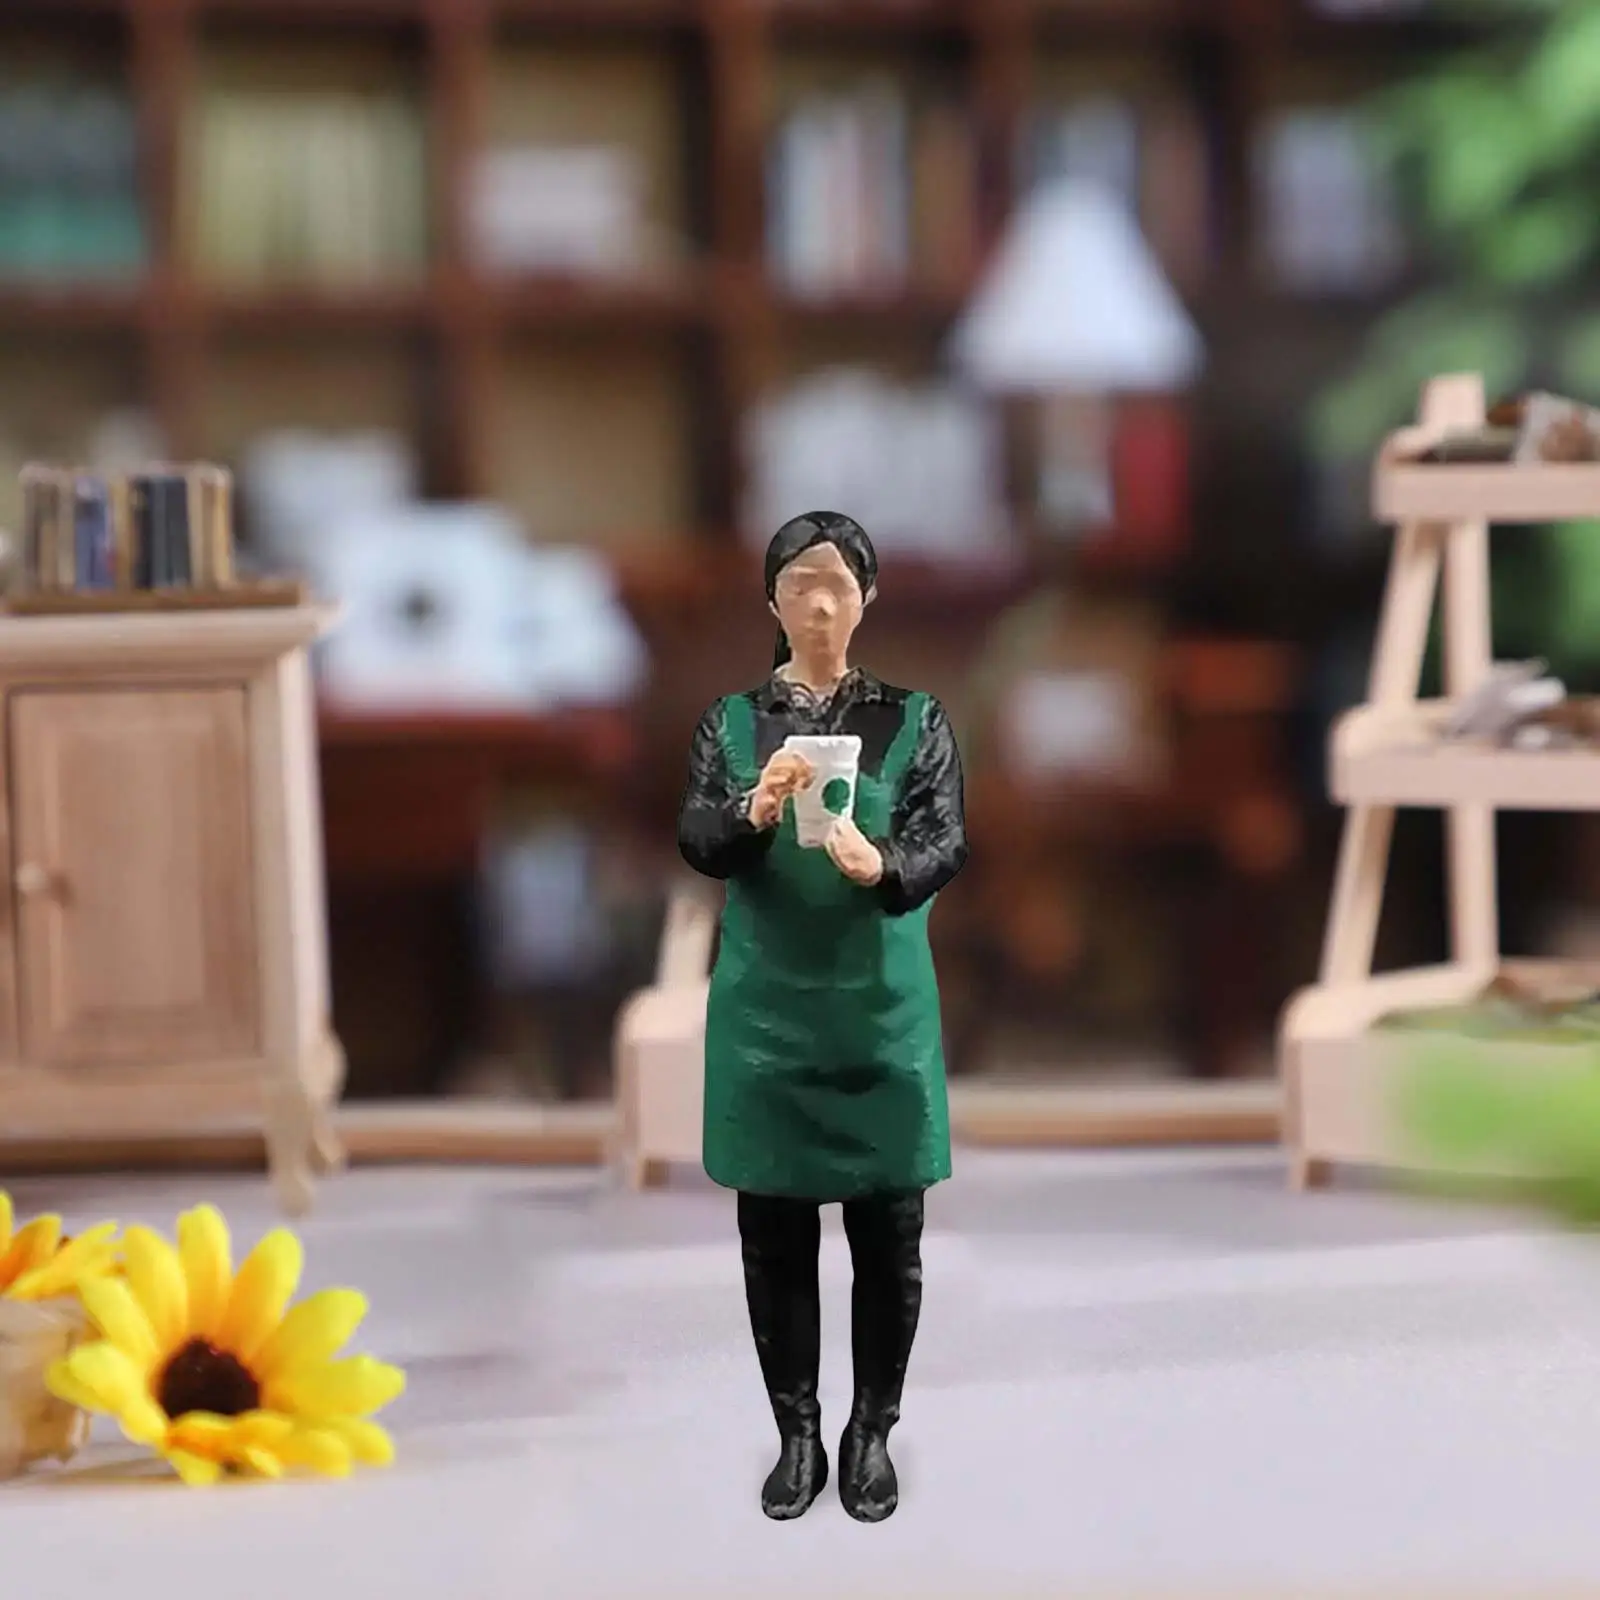 1/64 Coffee Salesperson Figures Scene Street Micro Landscape Movie Props Ornaments